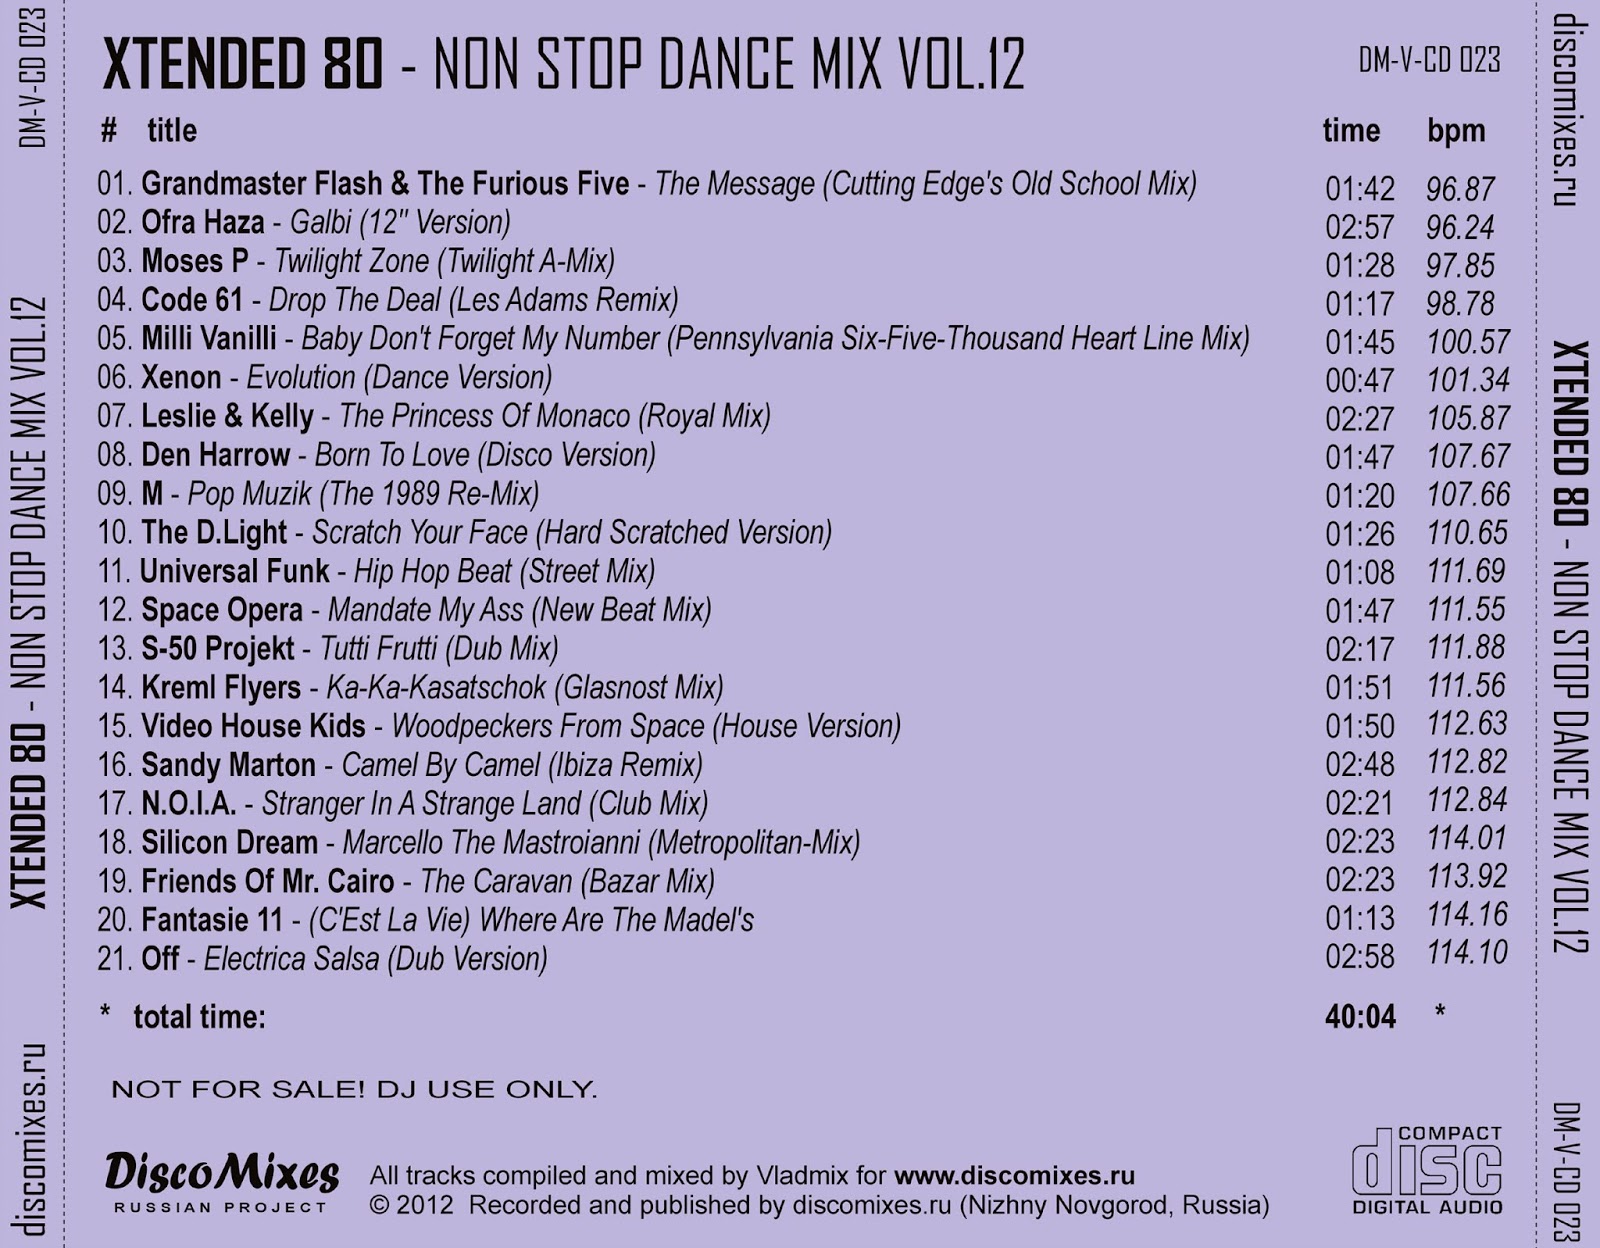 радио non stop gta 5 список песен фото 110